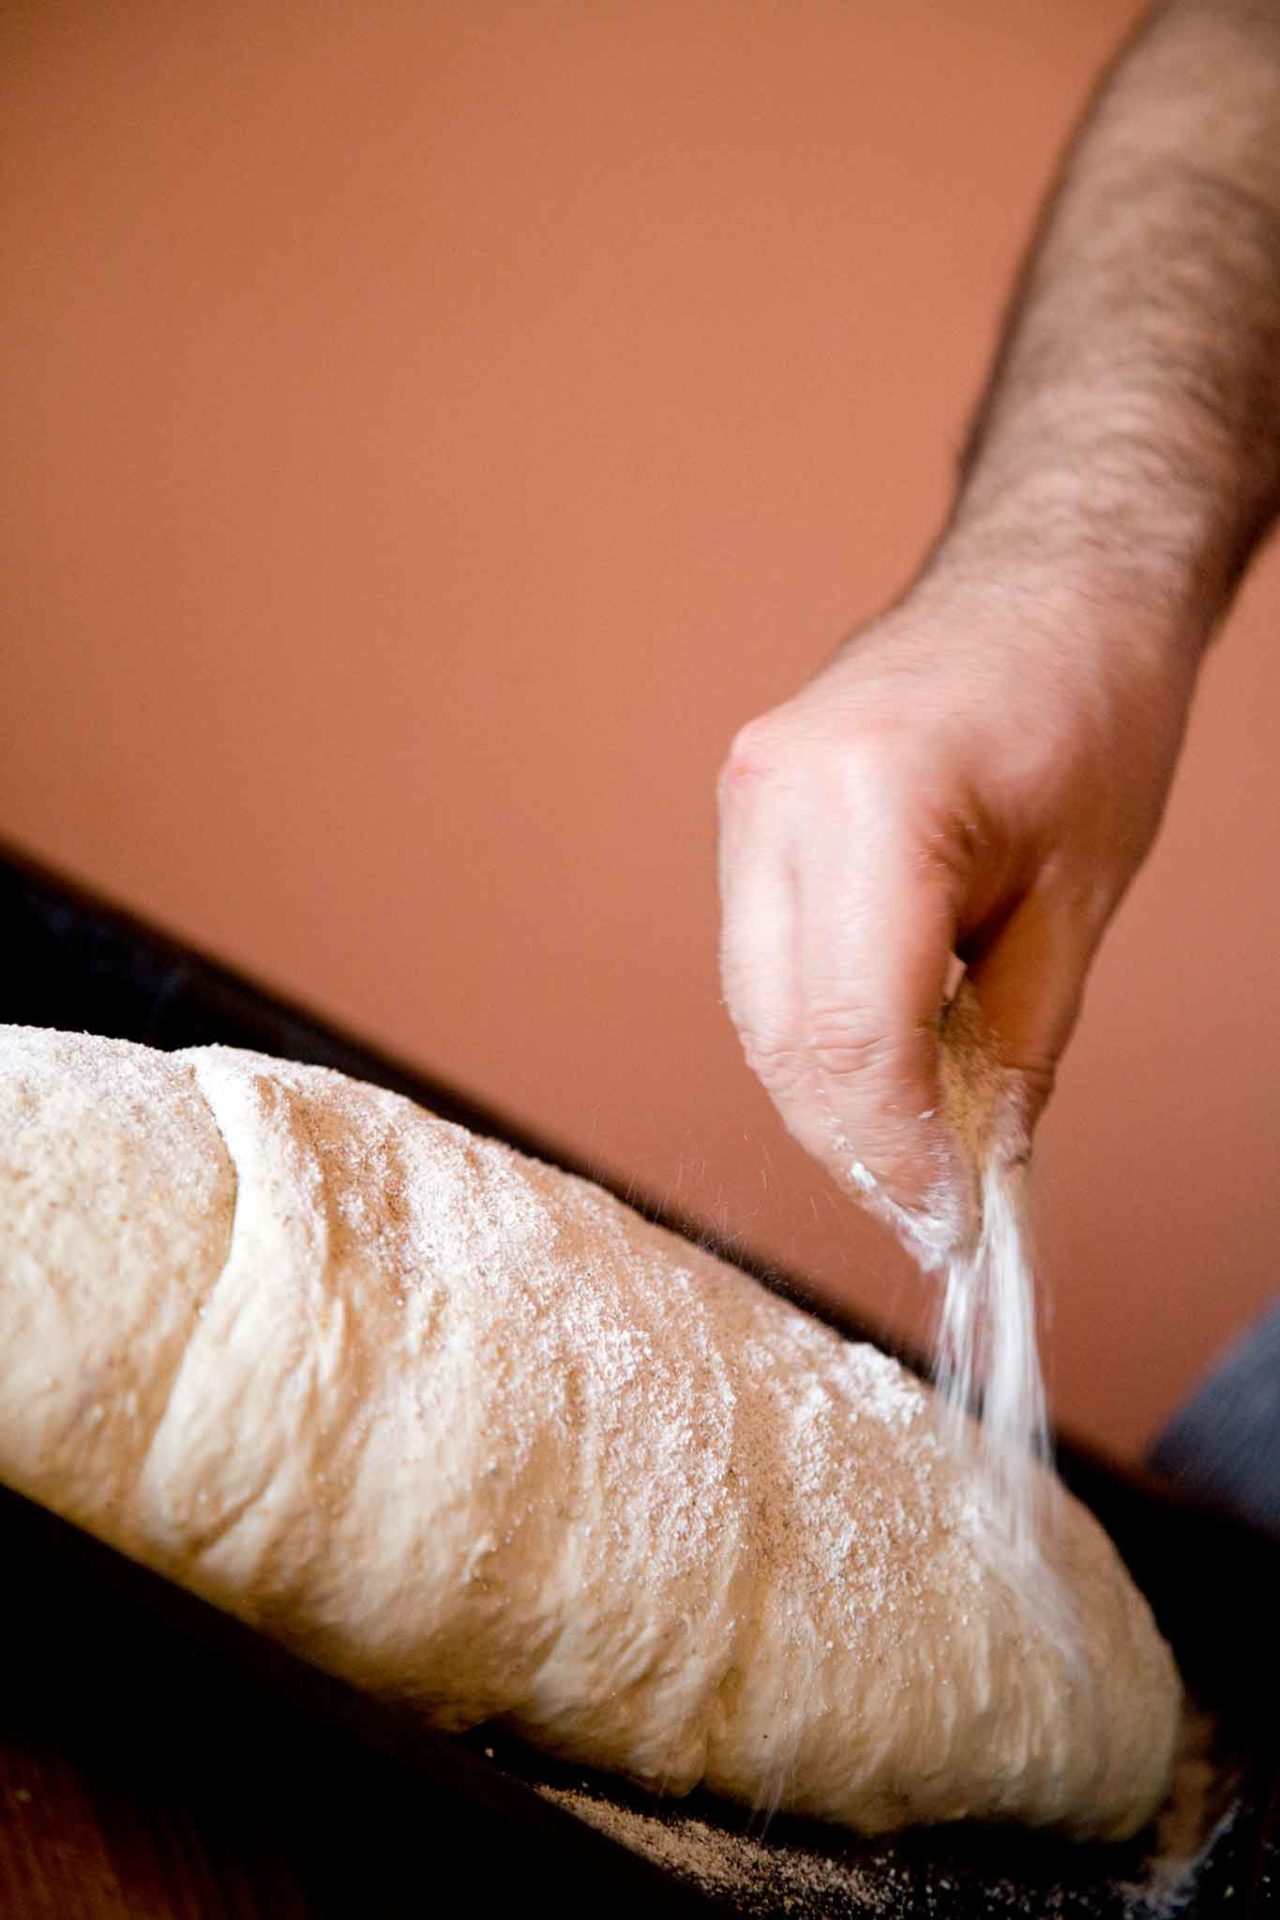 pane fatto in casa